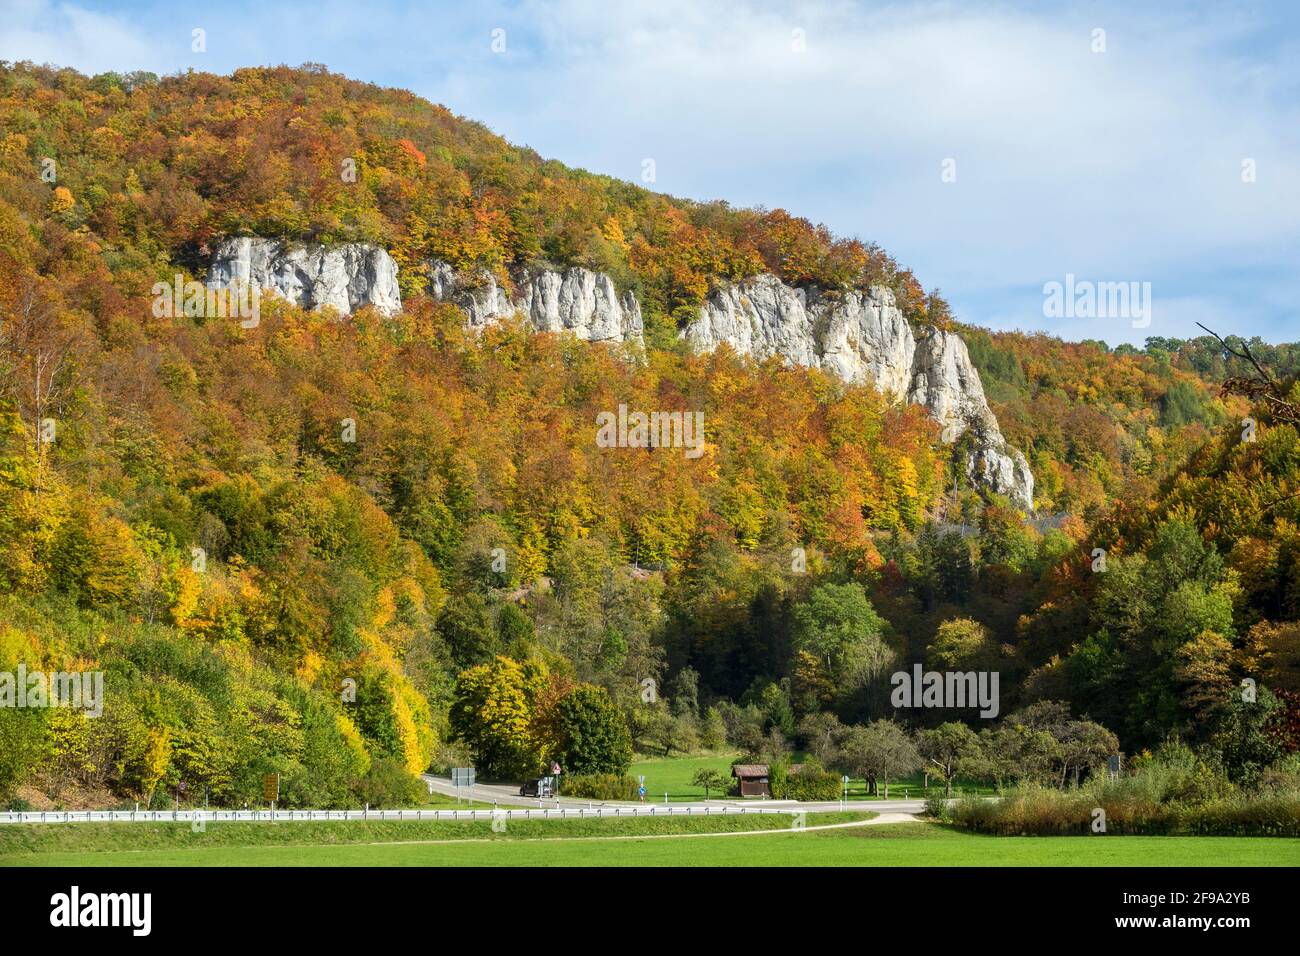 Germania, Baden-Wuerttemberg, Bad Urach - Whiting, Linke Wittlinger Felsen in Ermstal sul lato destro della valle. Foto Stock